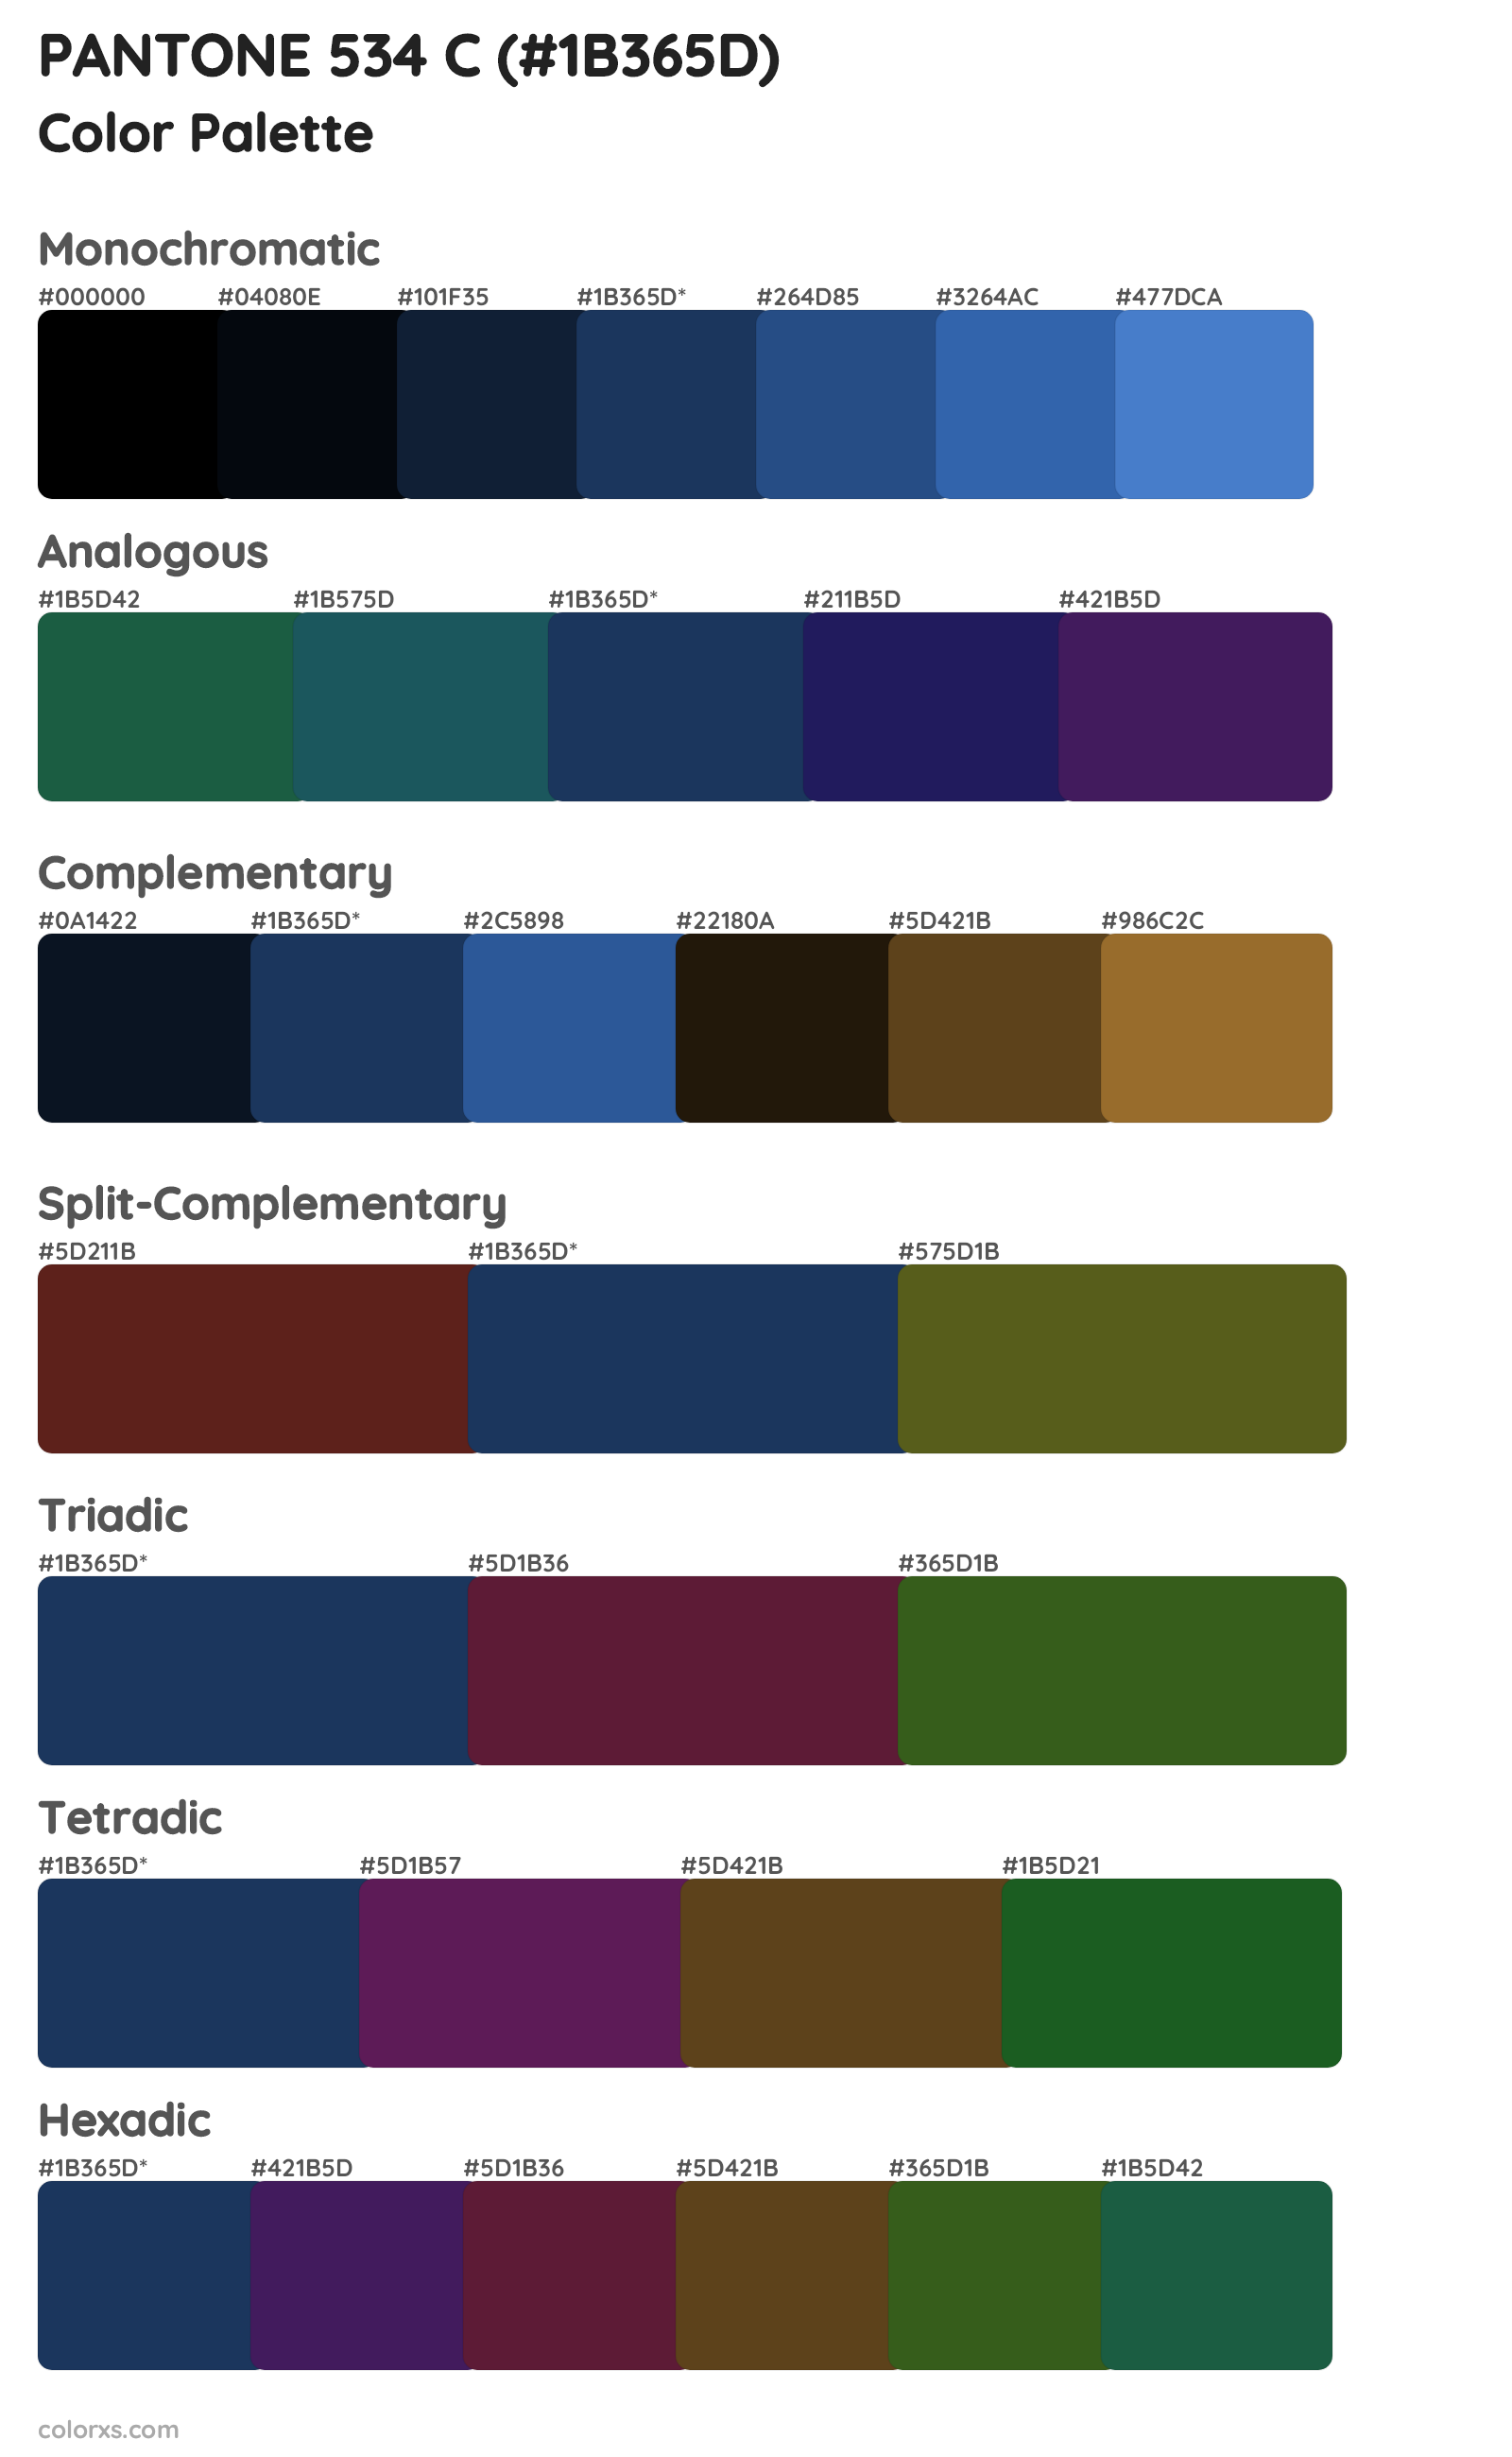 PANTONE 534 C Color Scheme Palettes